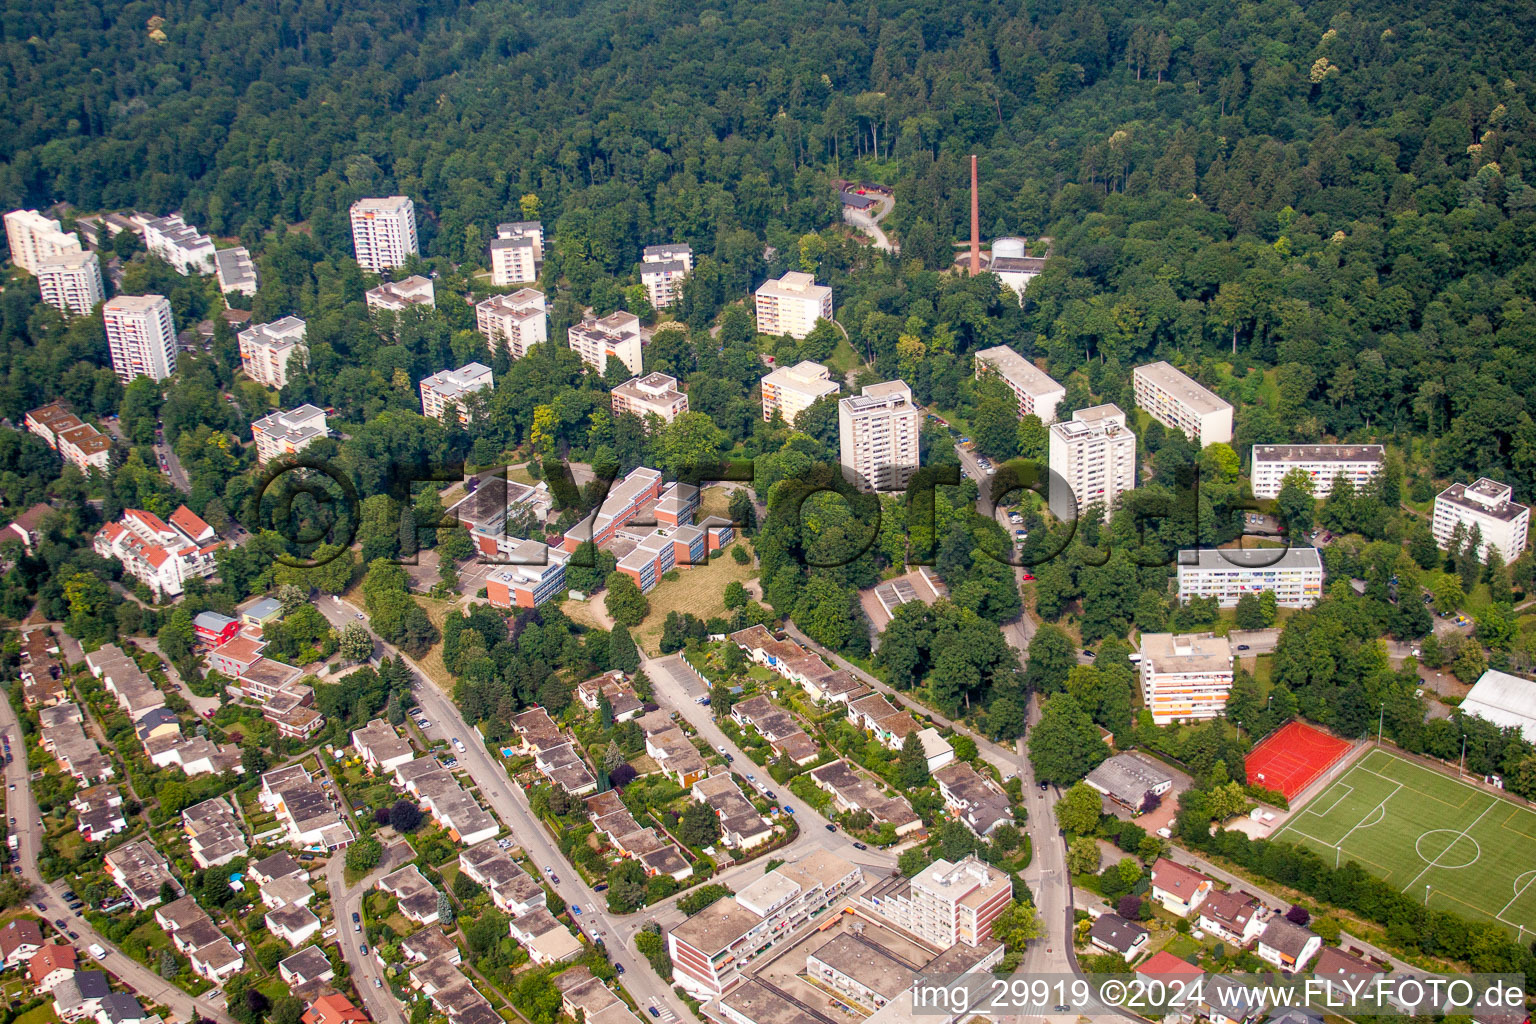 Vue aérienne de Immeubles de grande hauteur et lotissements unifamiliaux et multifamiliaux sur les pentes du sud de l'Odenwald dans le quartier d'Emmertsgrund à le quartier Boxberg in Heidelberg dans le département Bade-Wurtemberg, Allemagne